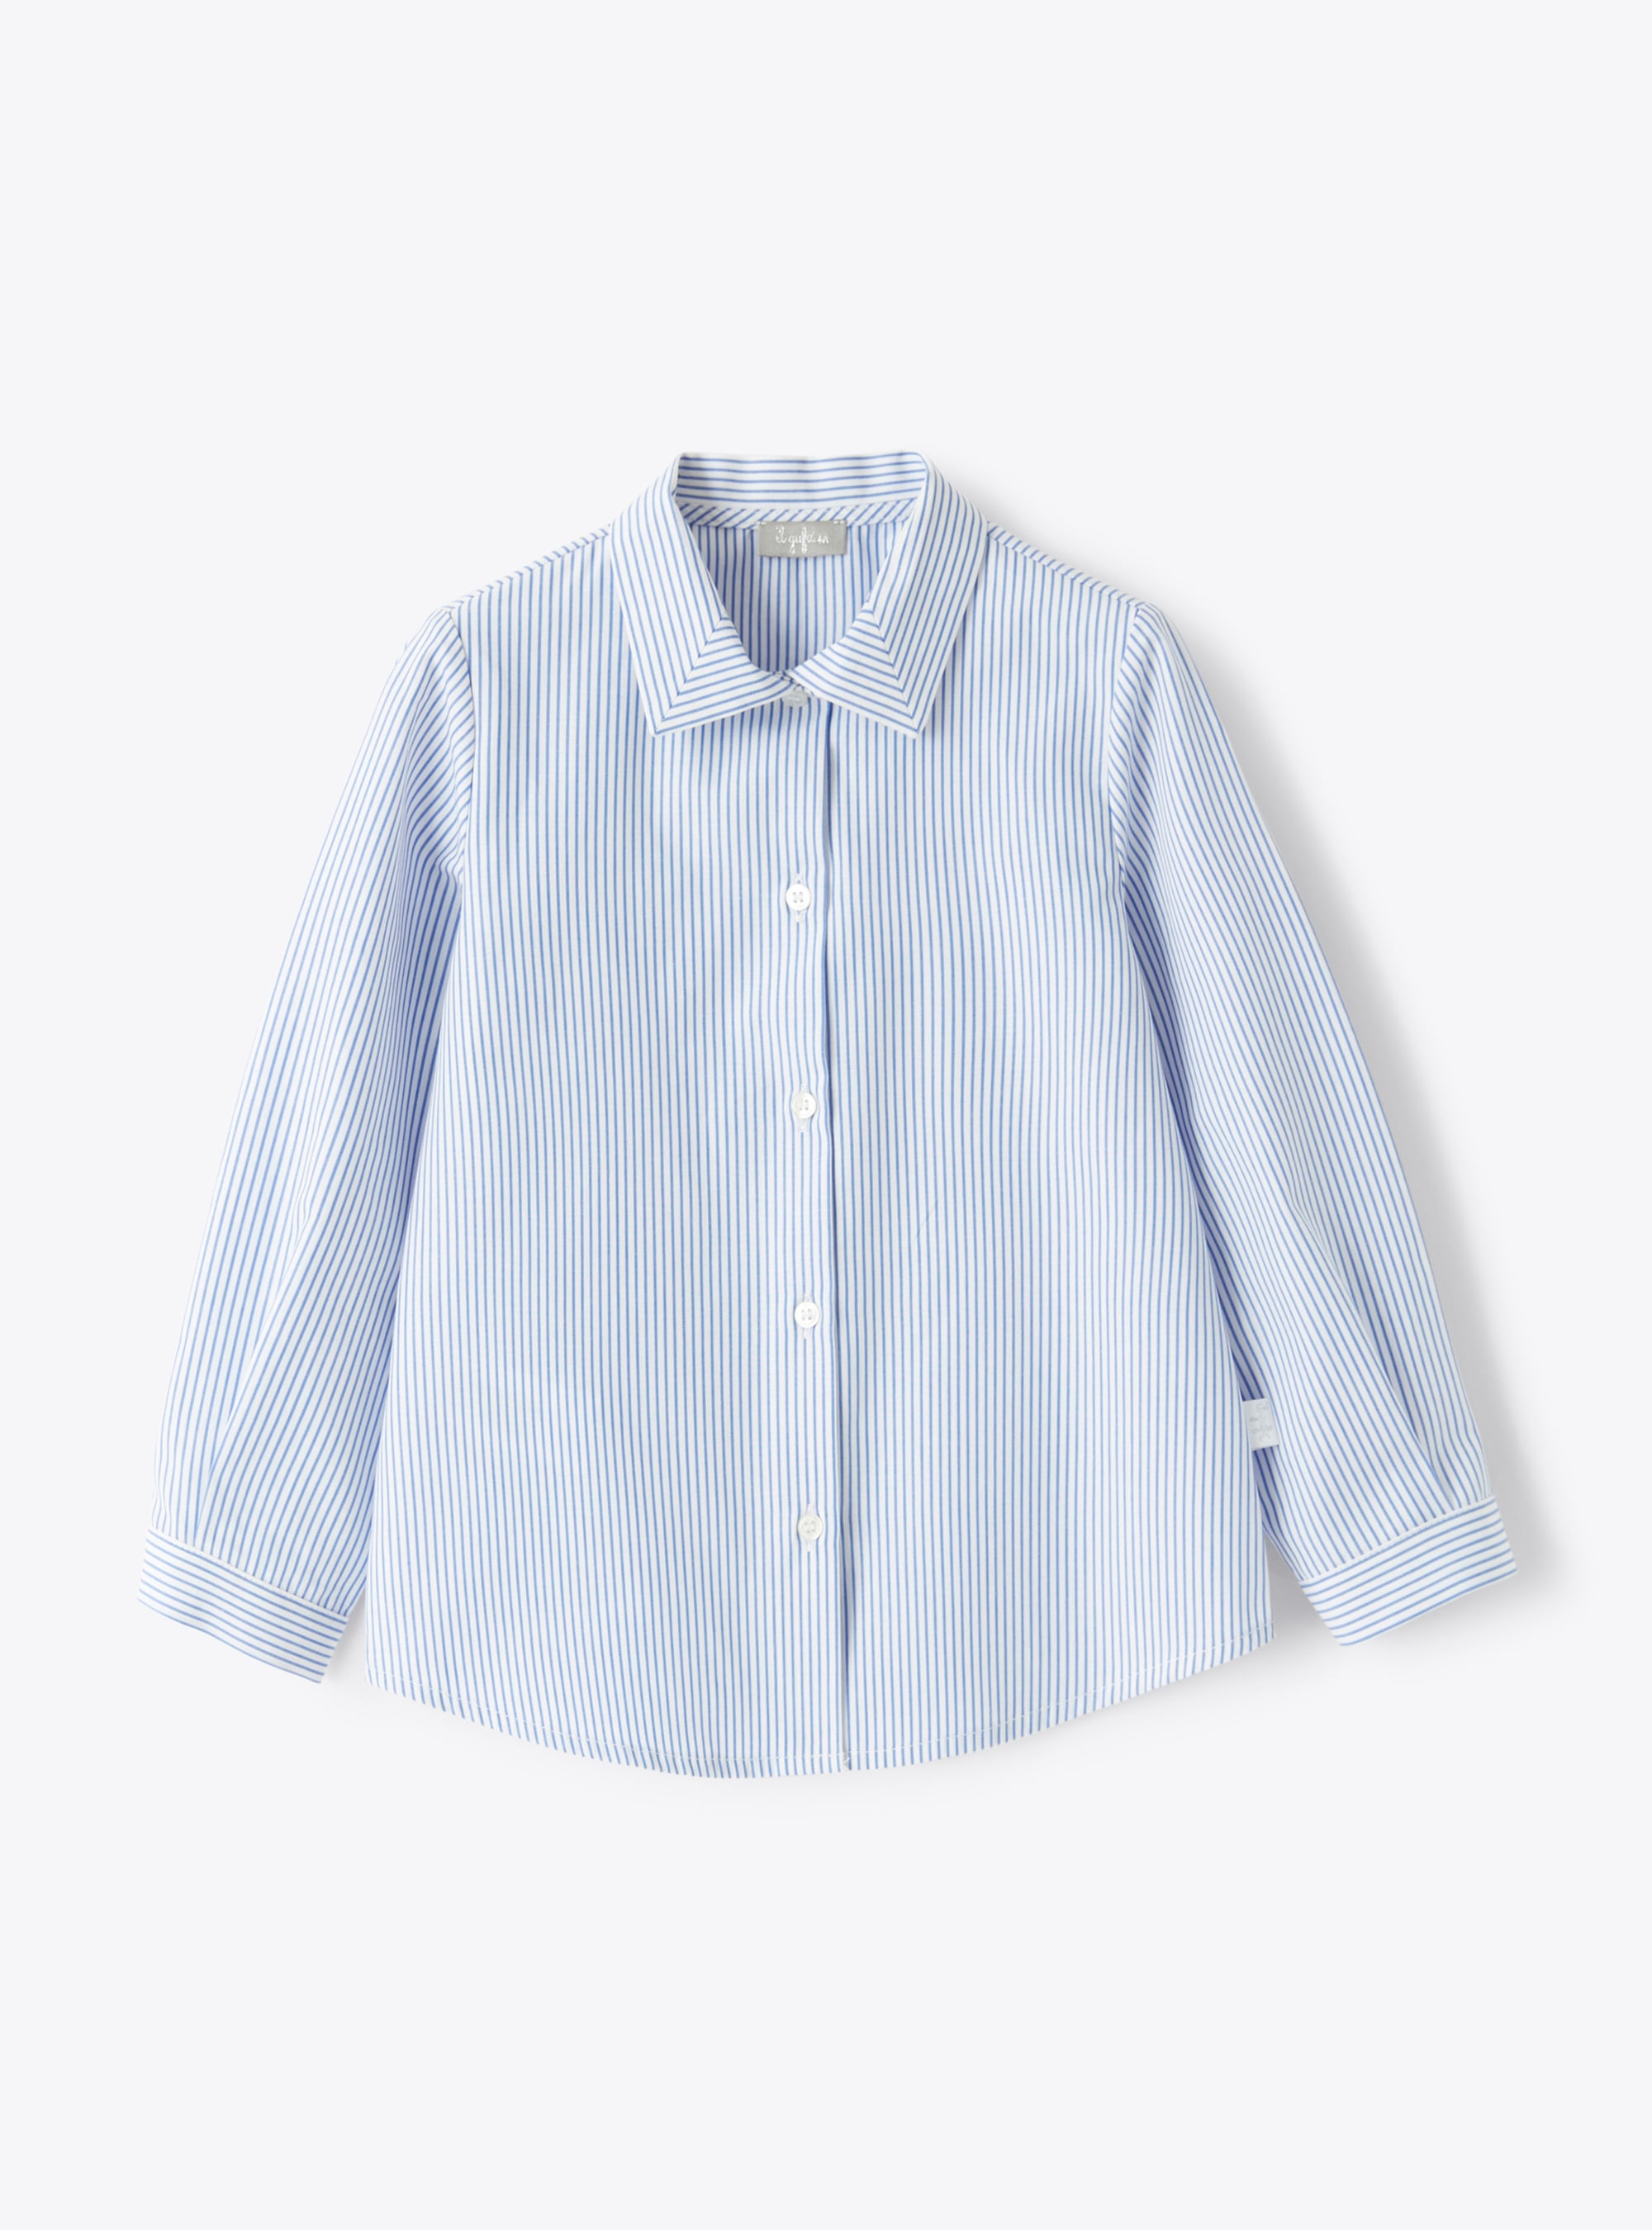 Bluse mit Streifenmuster in Kornblumenblau - Hemden - Il Gufo